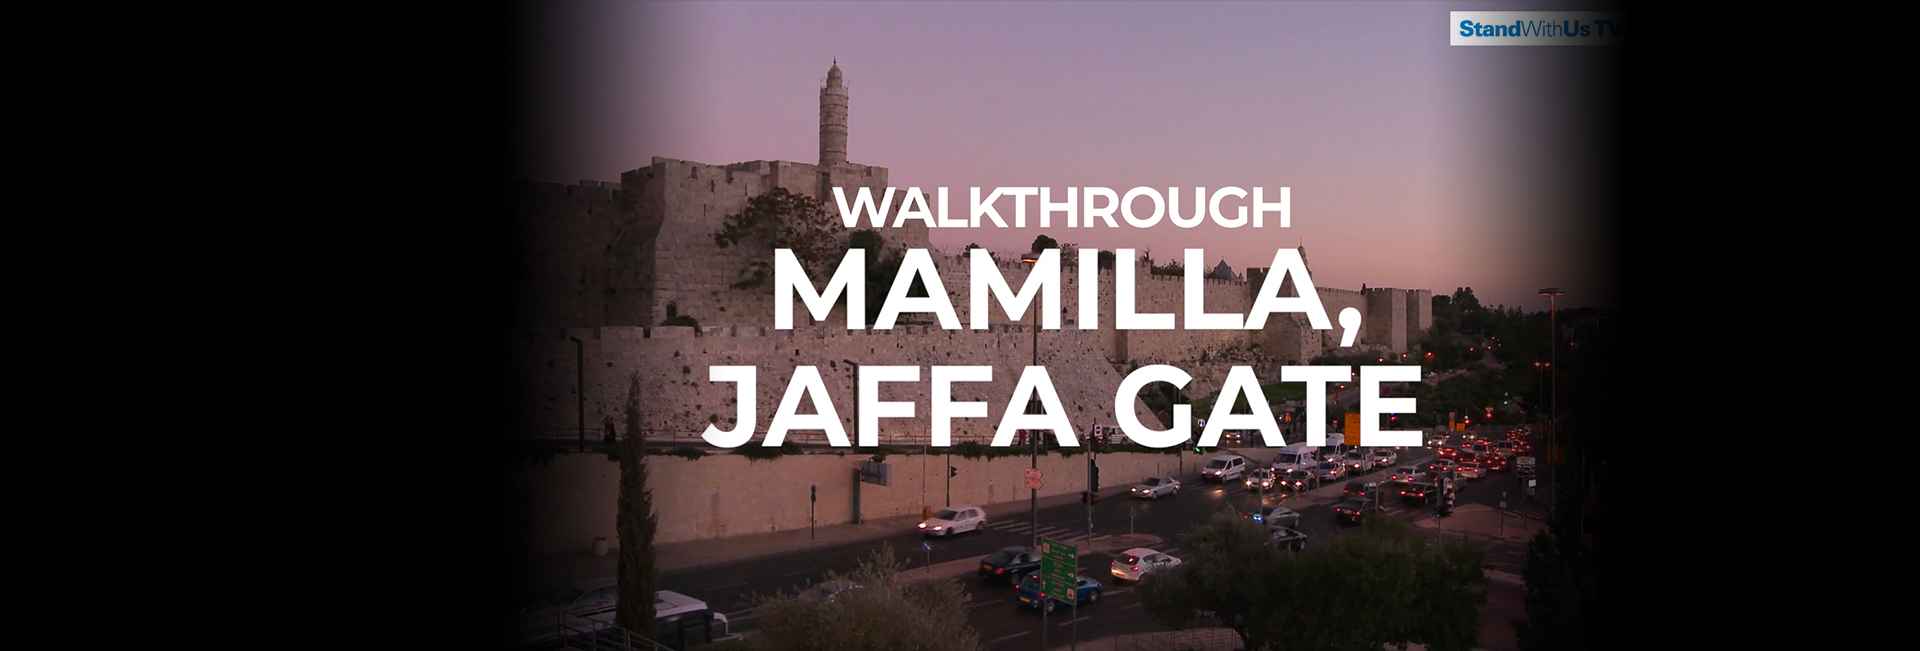 Jaffa Gate, Mamilla | WalkThrough